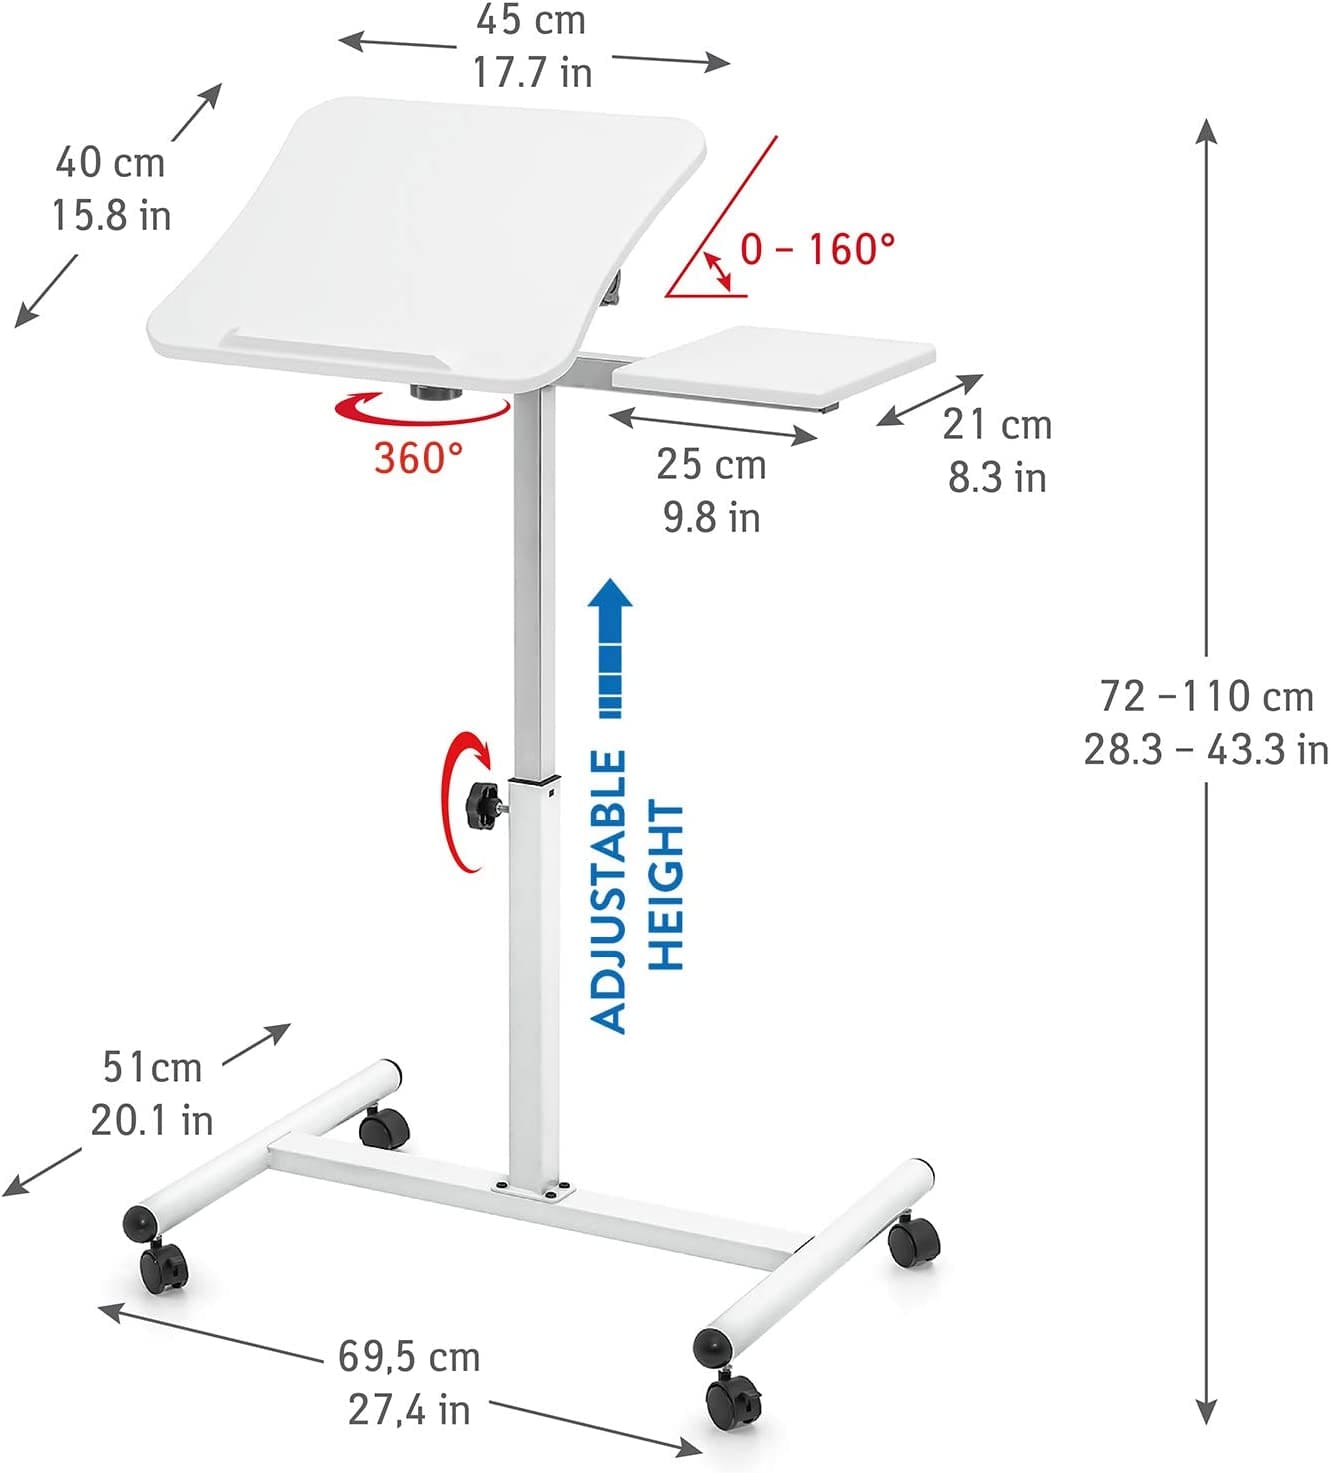 Tischplatte 45X40cm ist für 7-17 "Laptops geeignet. Große Mausplatine 8" X 10"(21X25cm).